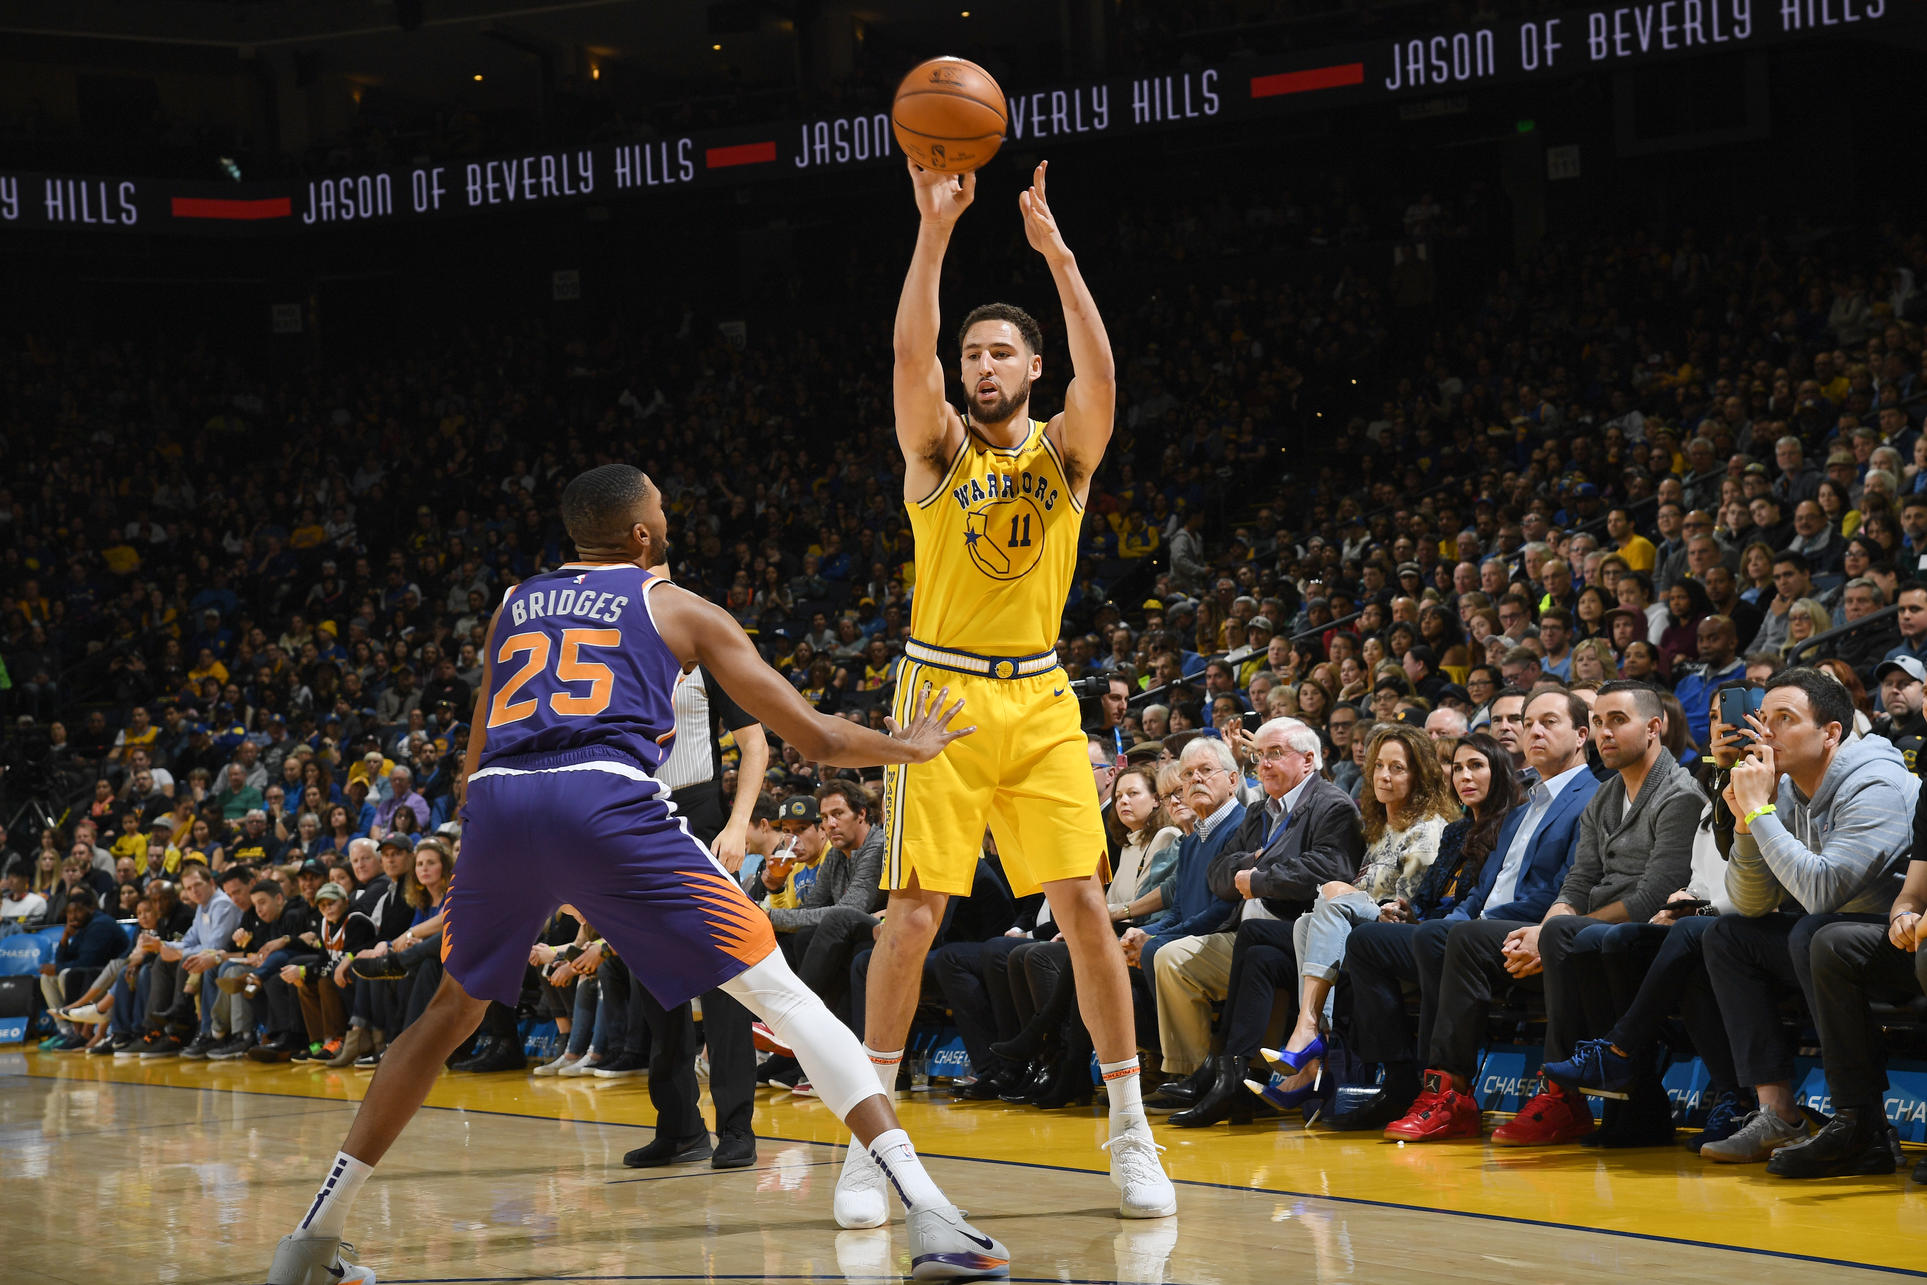 Trận thua Suns chính là màn trình diễn ném 3 thảm hại nhất sự nghiệp của bộ đôi Curry và Thompson